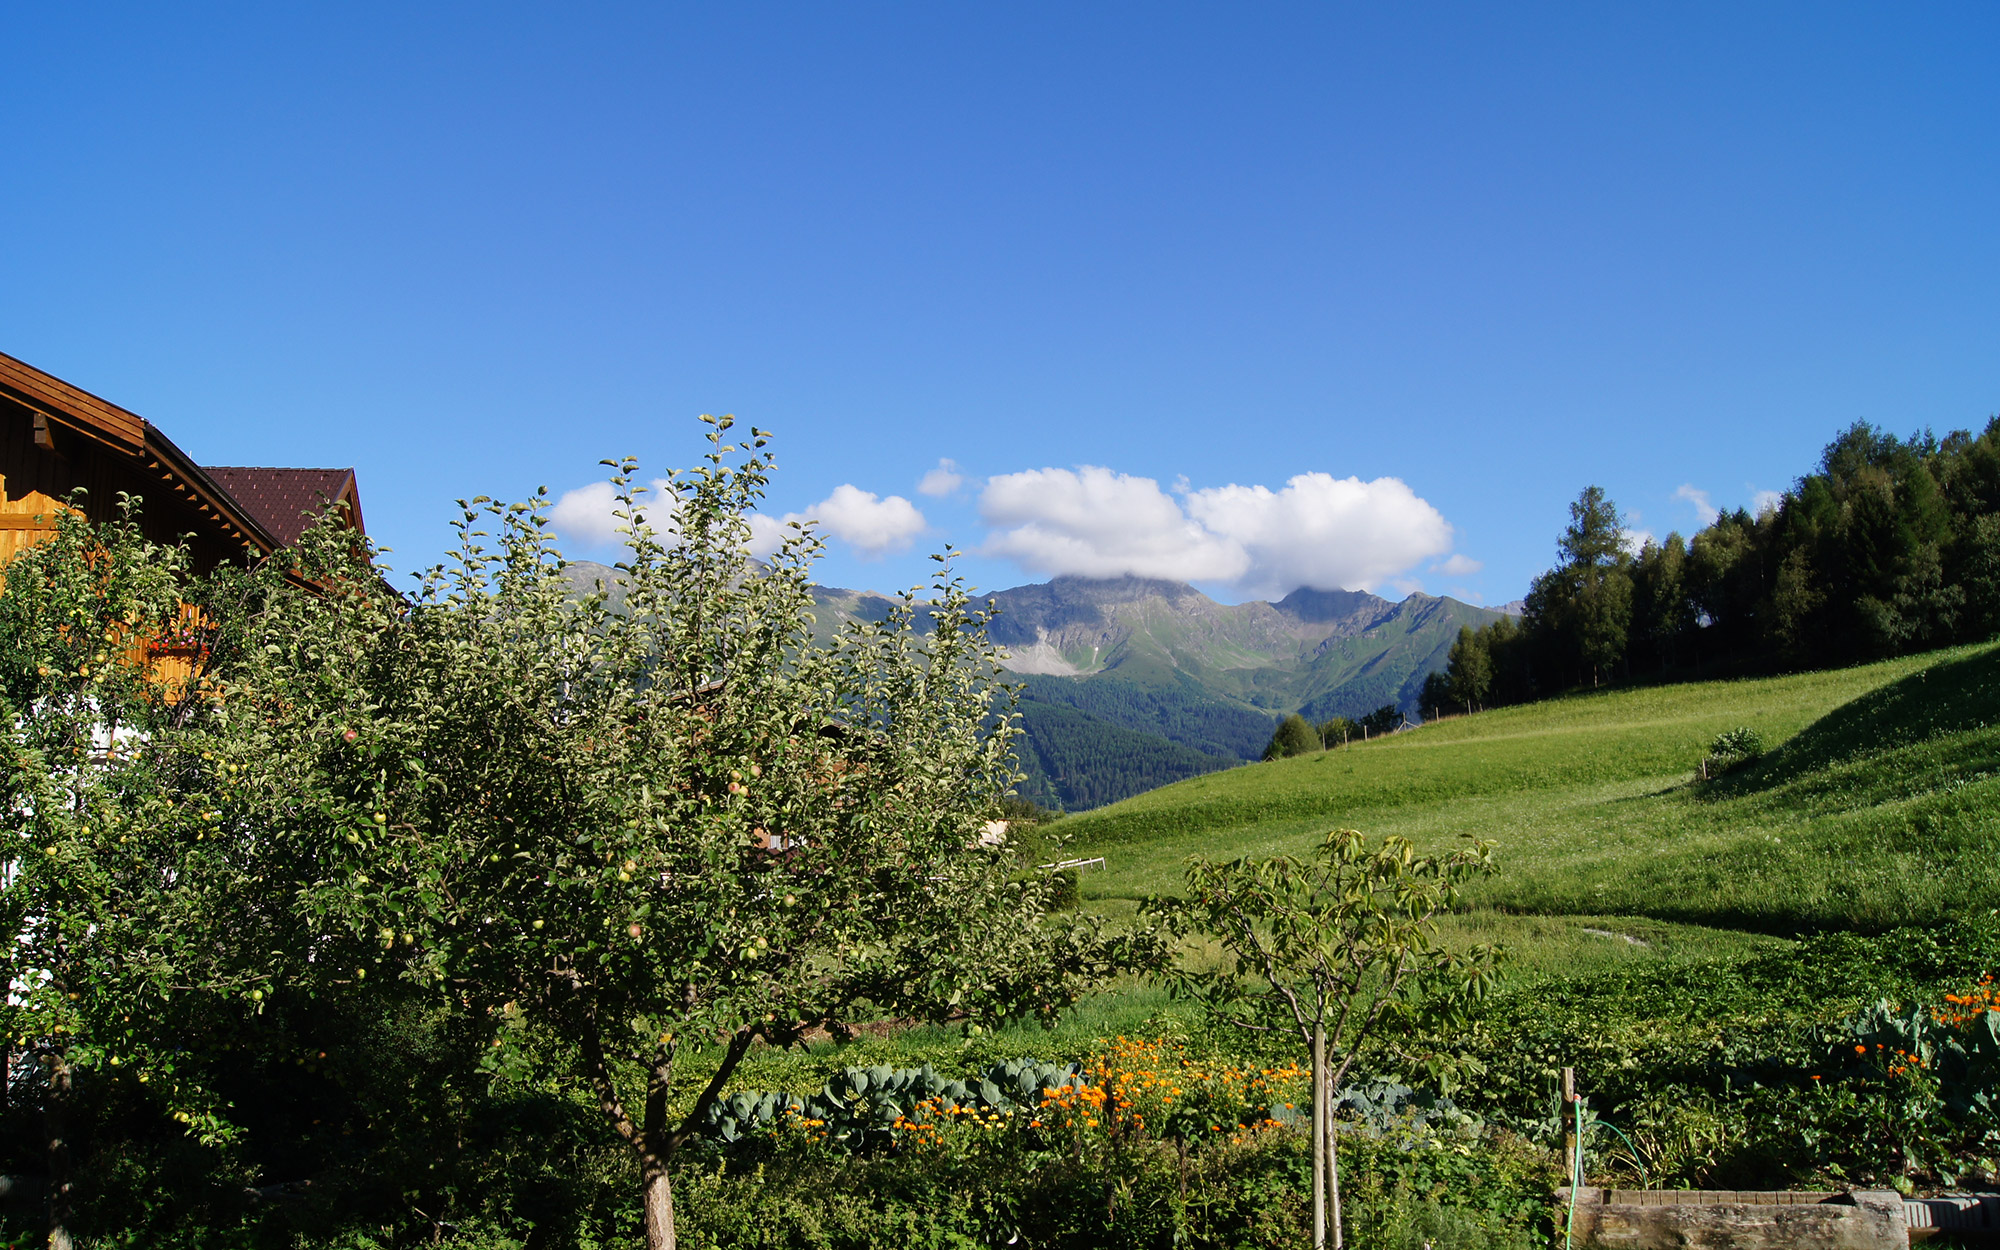 Alpenzeit "Herzstück" - garden